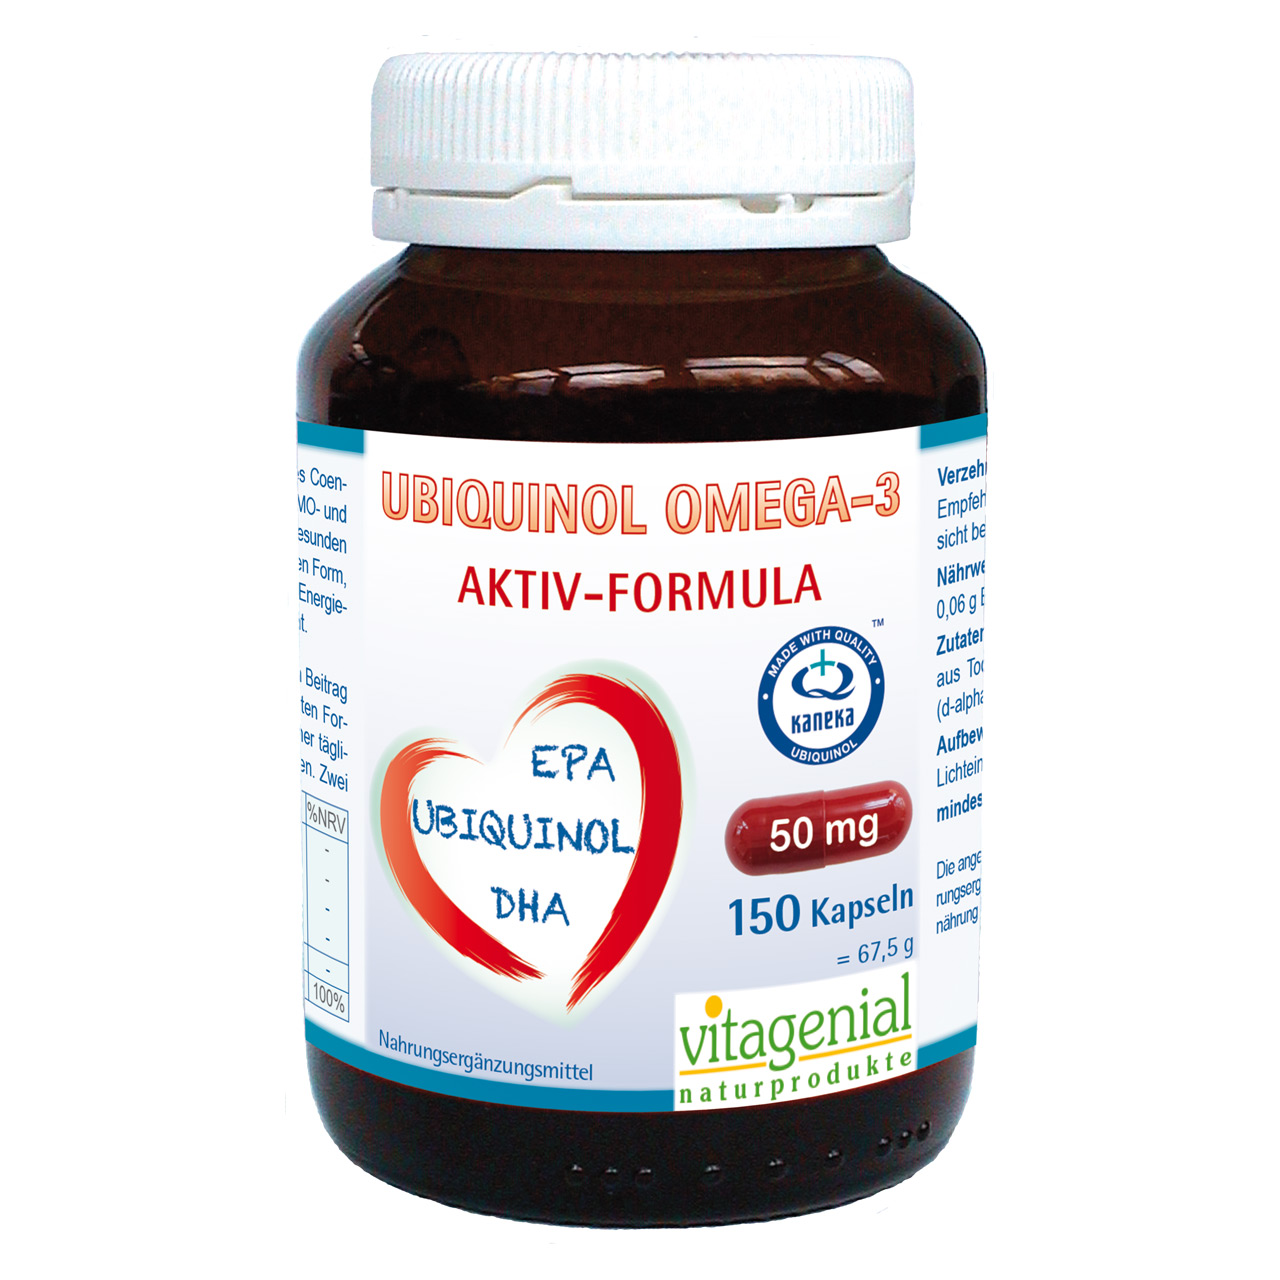 Vitagenial Ubiquinol Omega 3 mit DHA und EPA beinhaltet 150 Kapseln